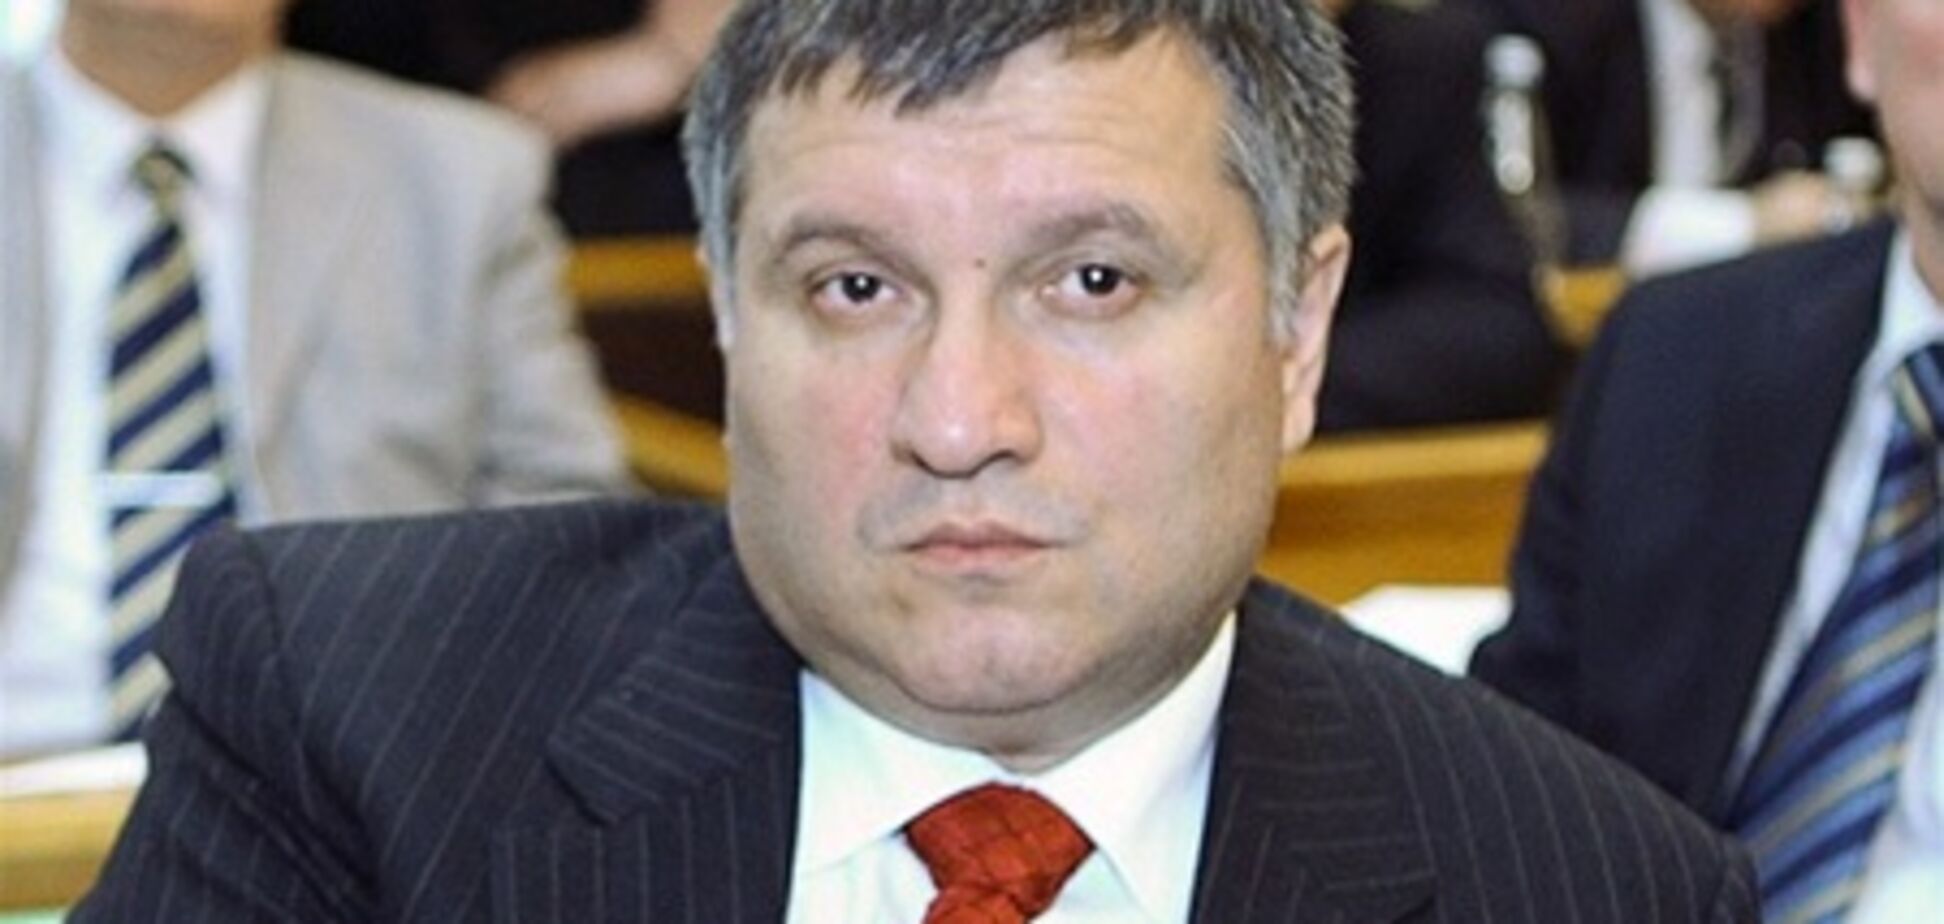 Стало известно, за что разыскивают бывшего губернатора Харьковщины Авакова